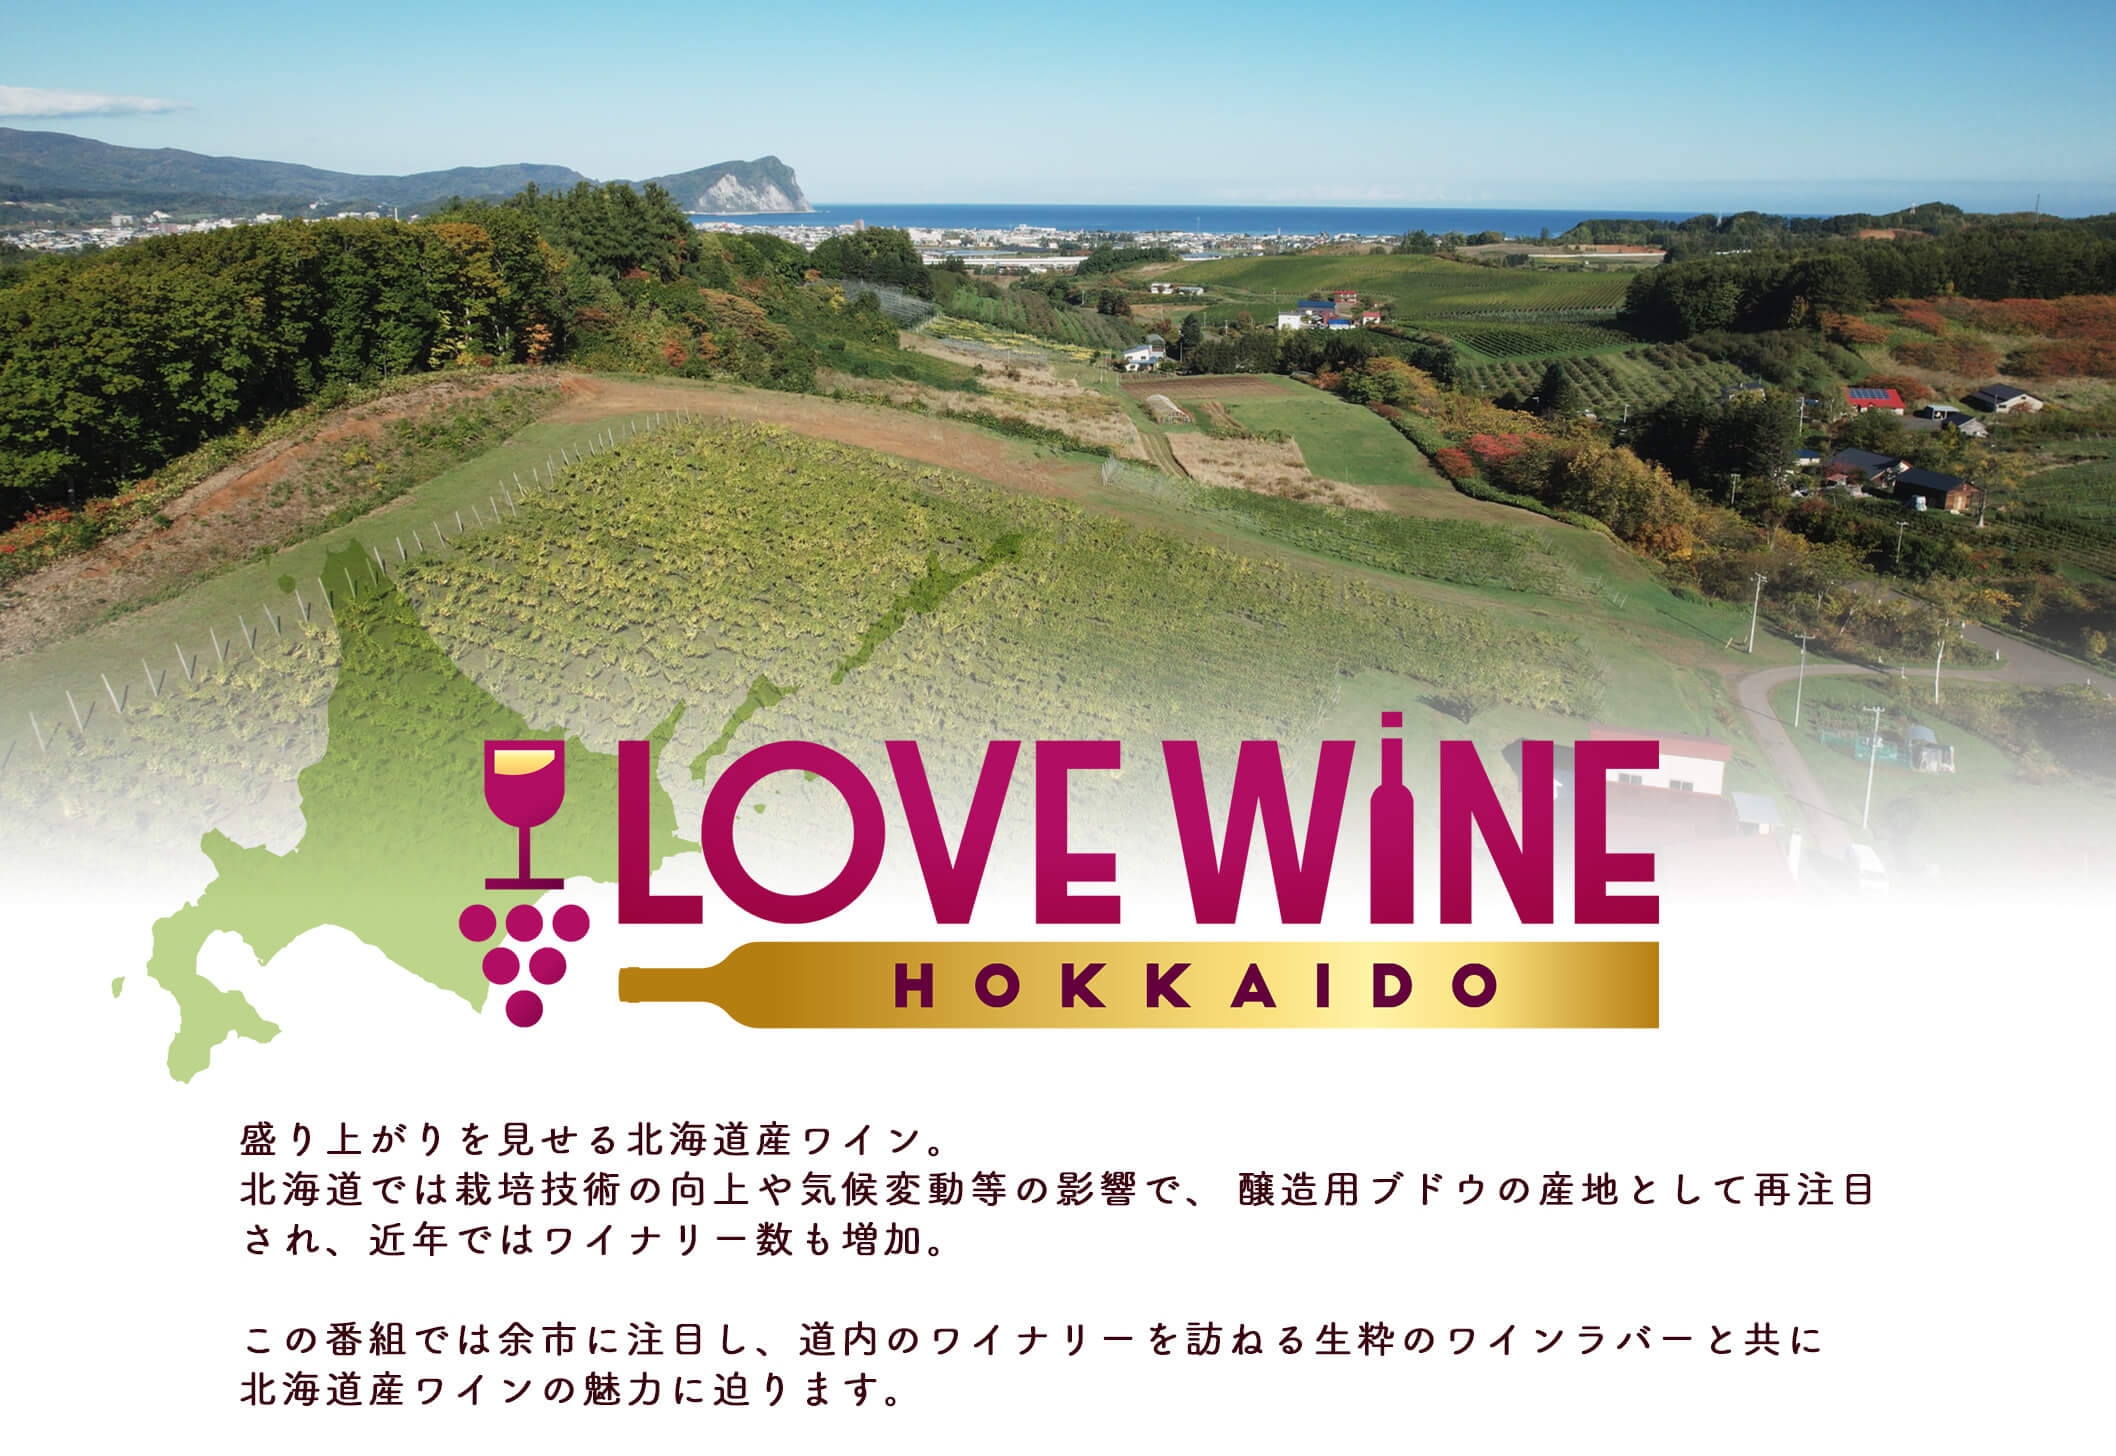 盛り上がりを見せる北海道産ワイン。北海道では栽培技術の向上や気候変動等の影響で、醸造用ブドウの産地として再注目され、近年ではワイナリー数も増加。この番組では余市に注目し、道内のワイナリーを訪ねる生粋のワインラバーと共に北海道産ワインの魅力に迫ります。